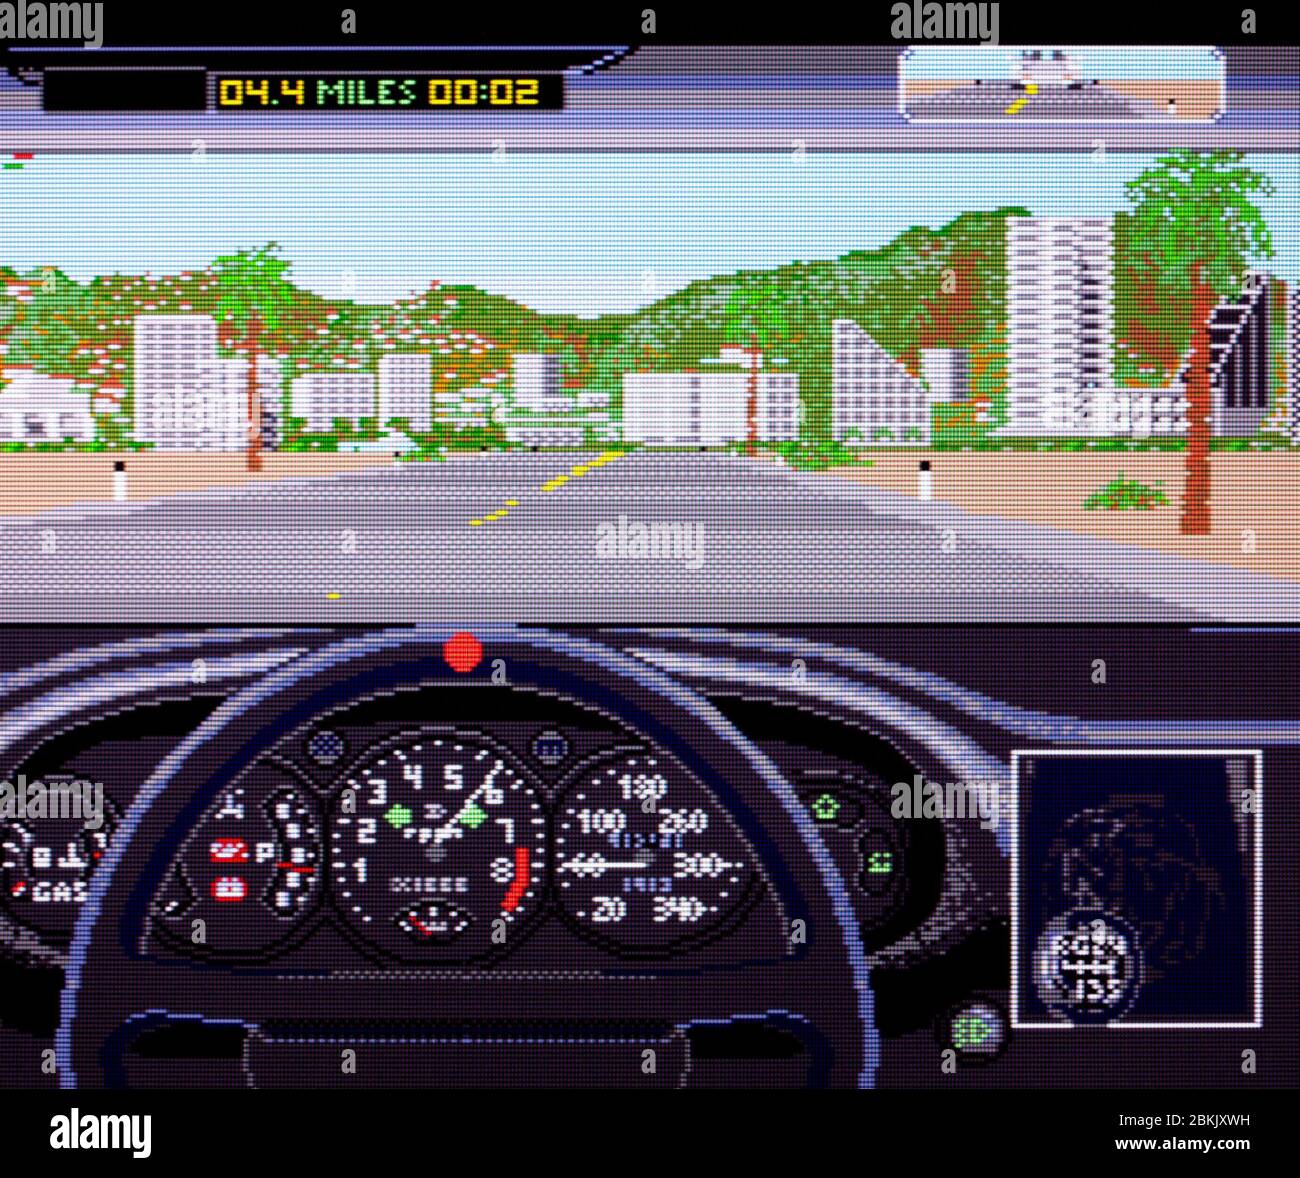 Testfahrt das Duell - Sega Genesis Mega Drive - nur redaktionelle Verwendung Stockfoto